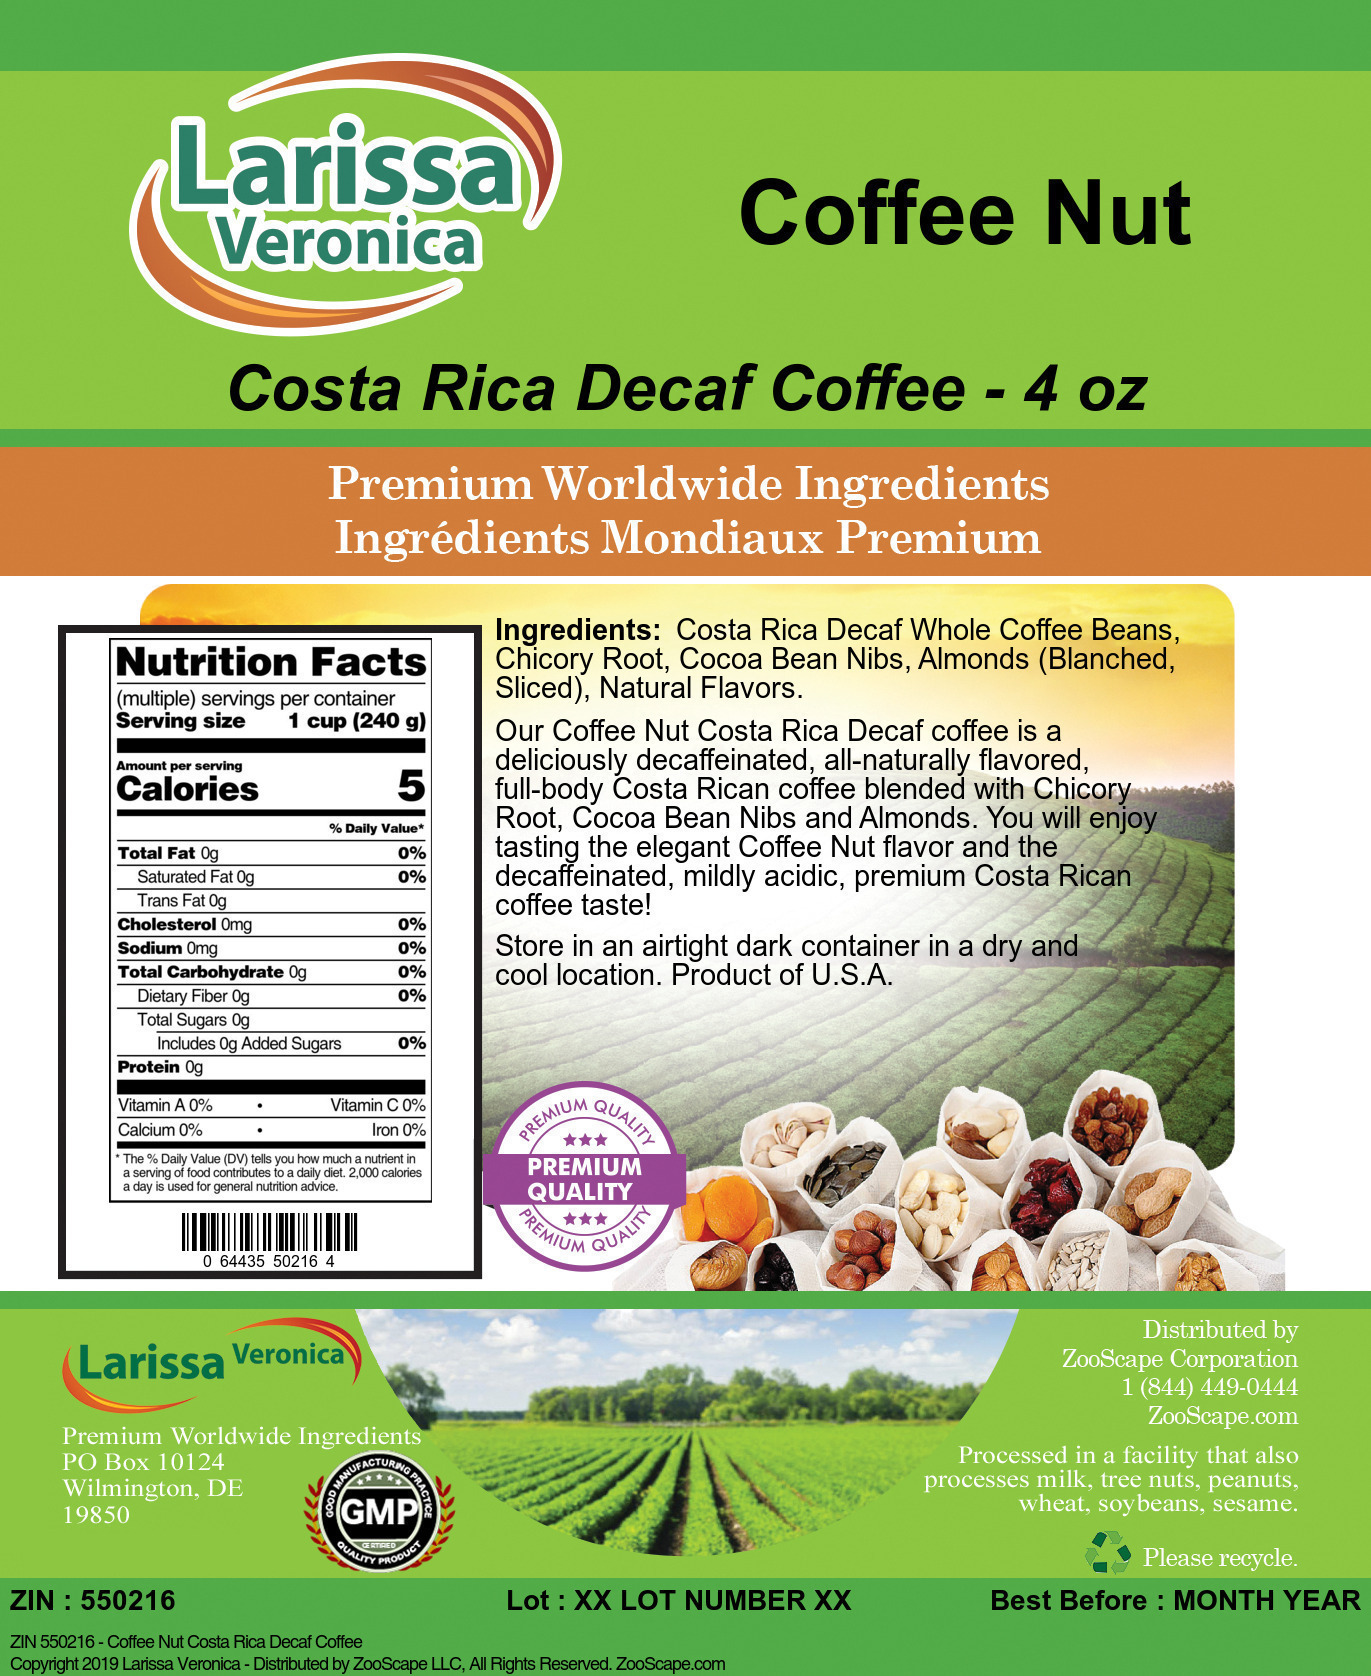 Coffee Nut Costa Rica Decaf Coffee - Label